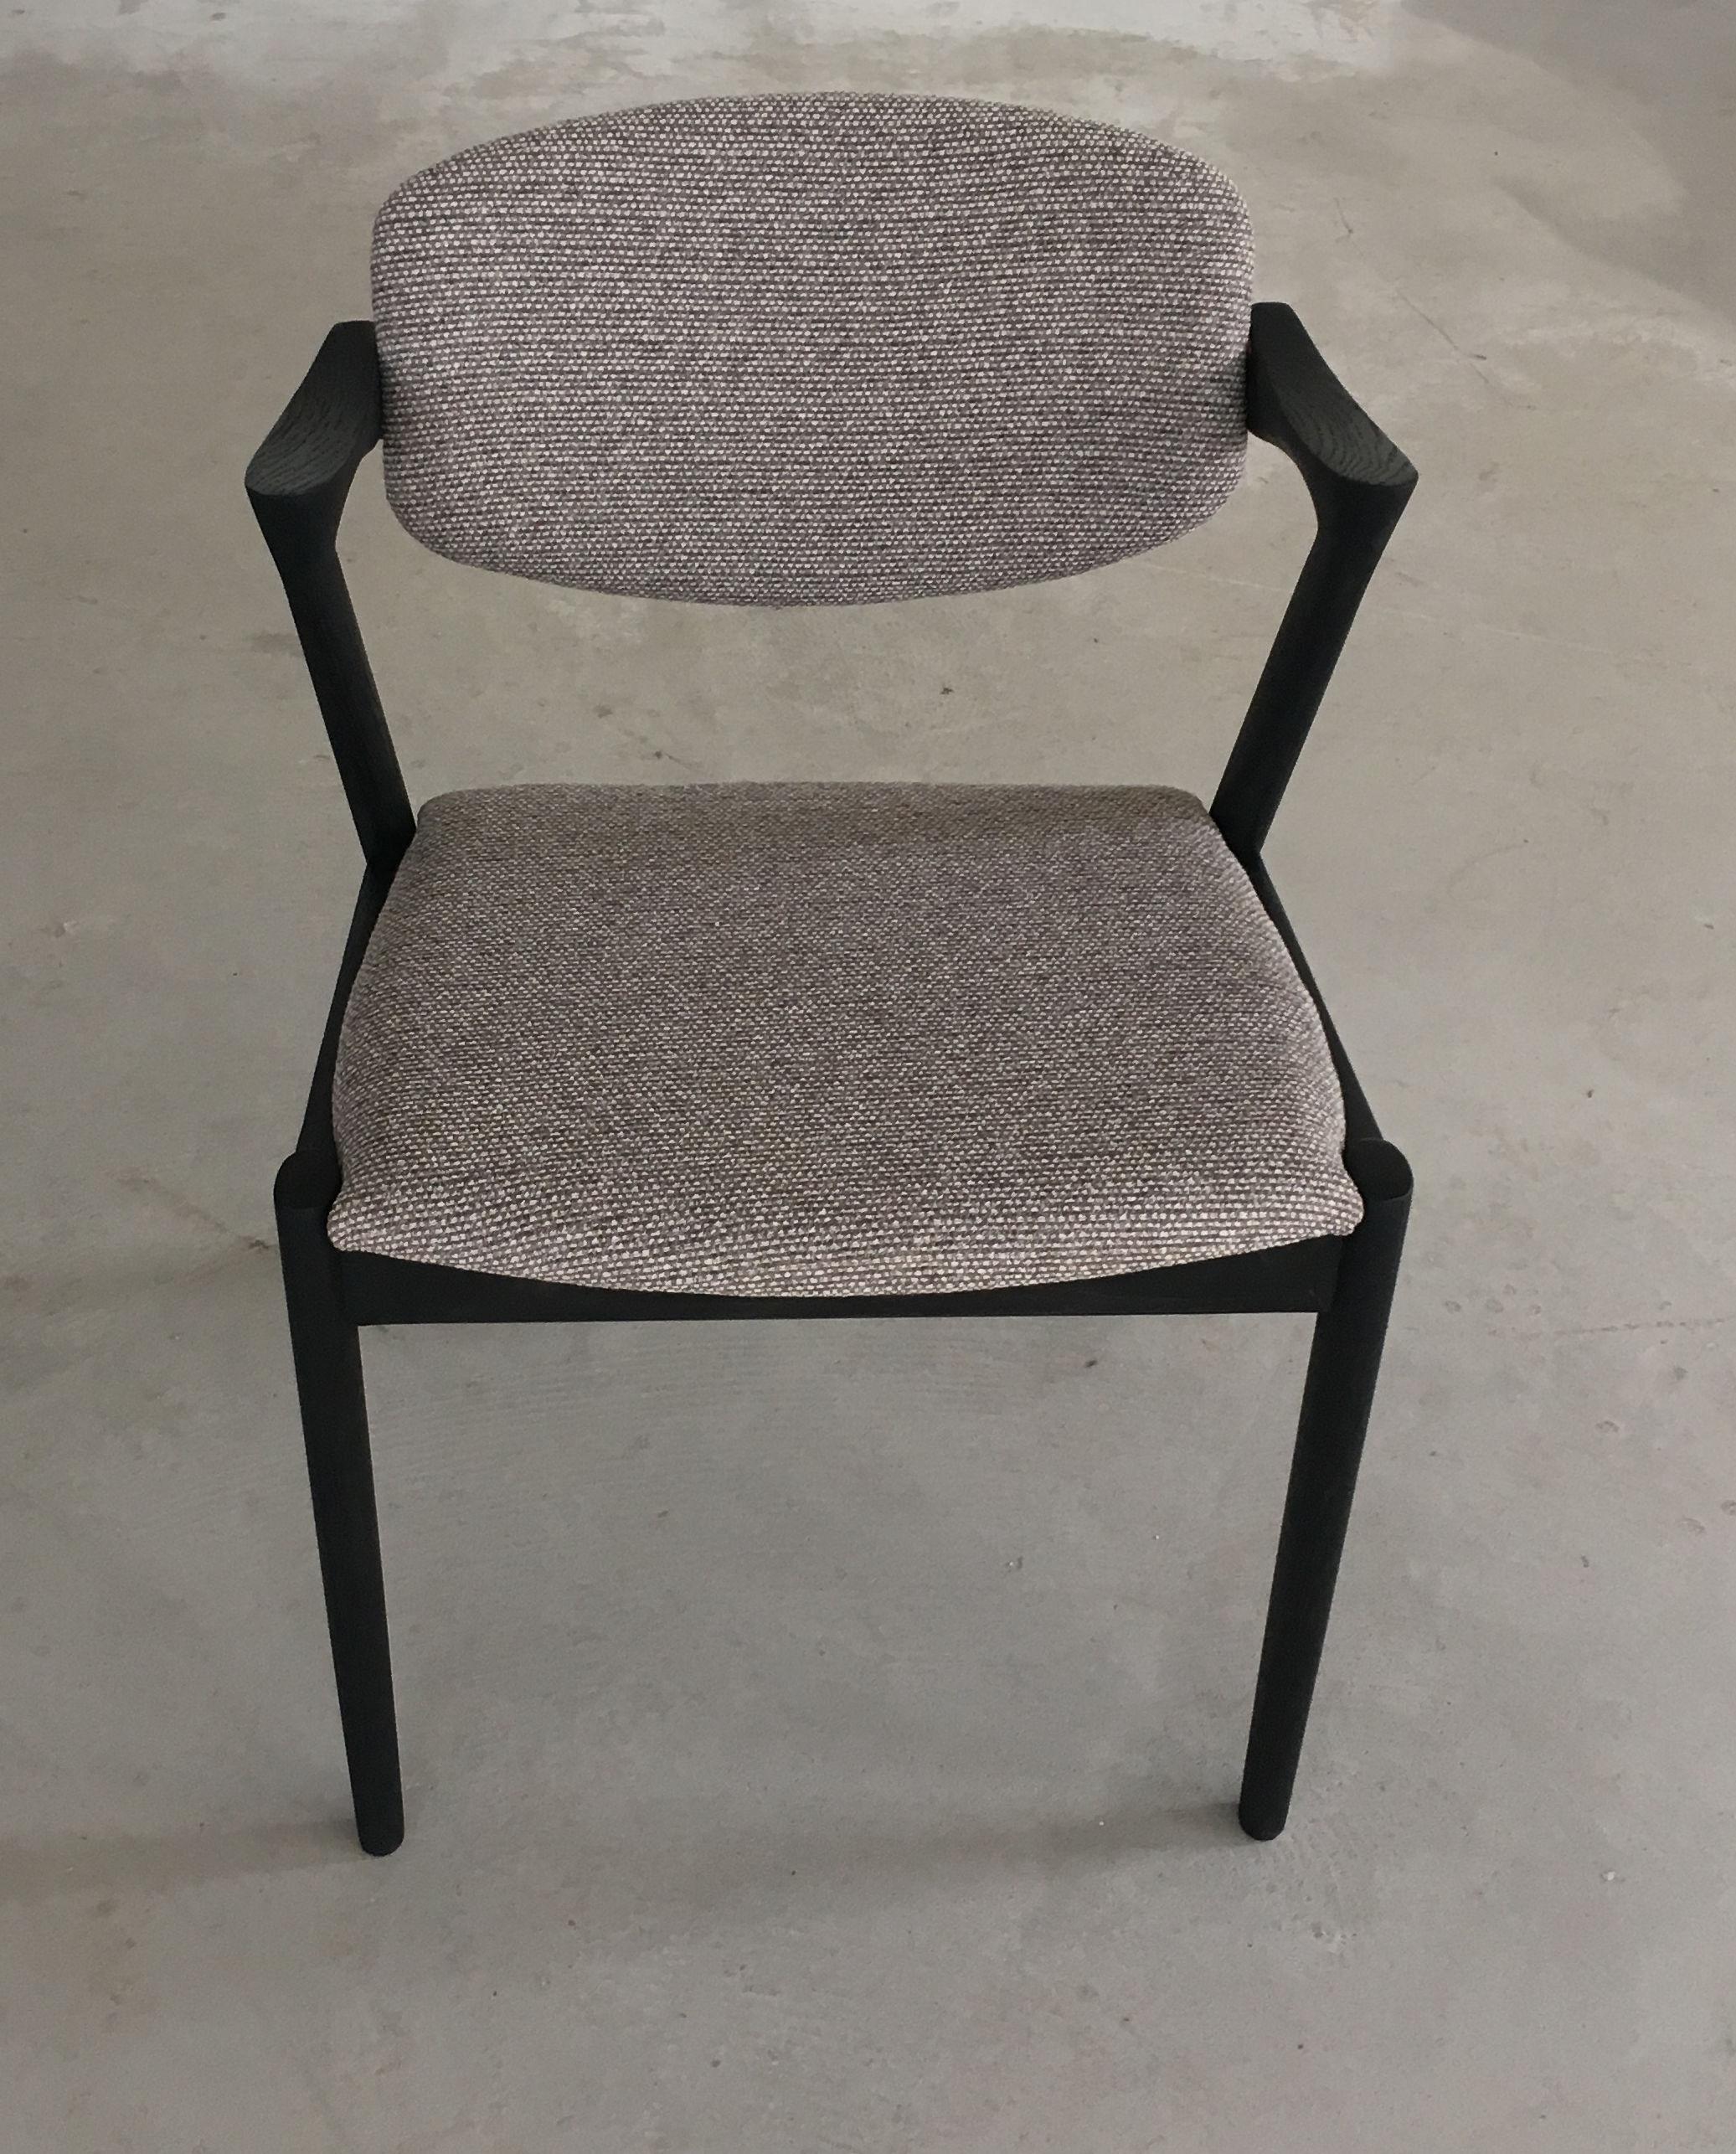 Ensemble de 8 chaises de salle à manger en chêne restauré et ébonisé, y compris le rembourrage, avec dossier pivotant, par Kai Kristiansen pour Schous Møbelfabrik.

Les chaises ont le design léger et élégant typique de Kai Kristiansen qui leur